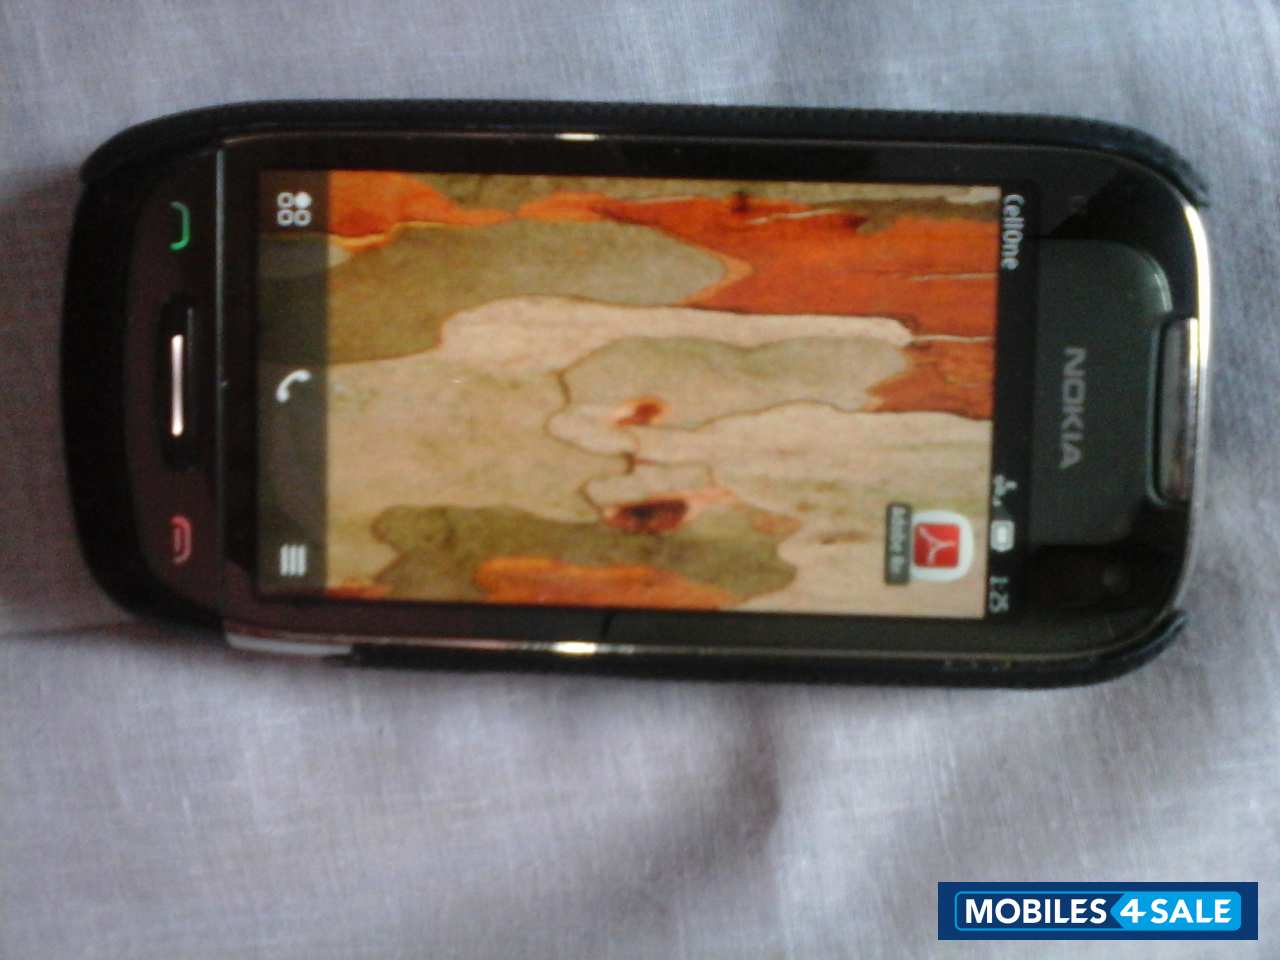 Black Nokia C7